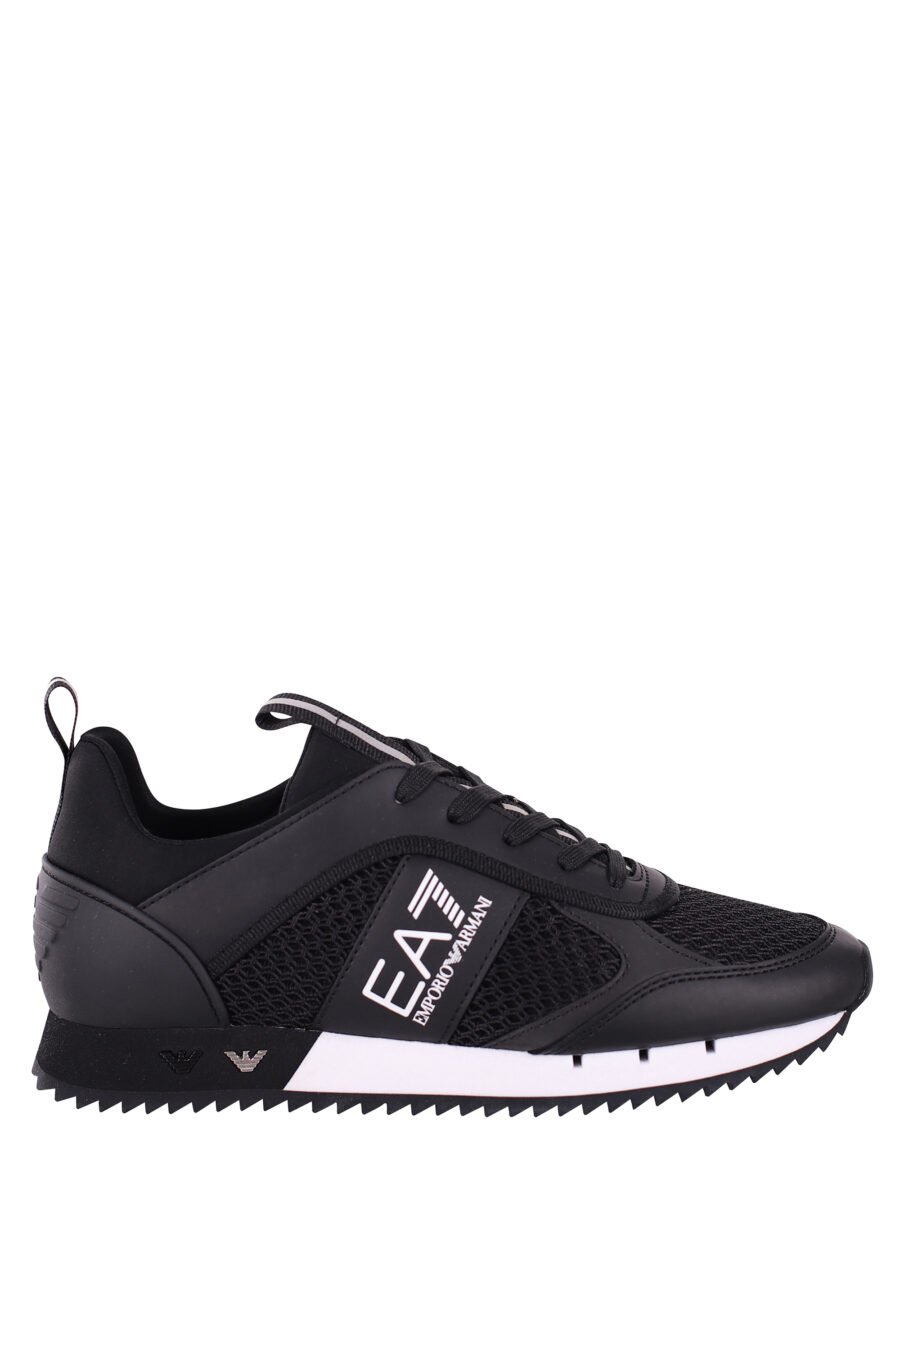 Zapatillas negras transpirables con logo "lux identity" blanco y suela bicolor - IMG 5768